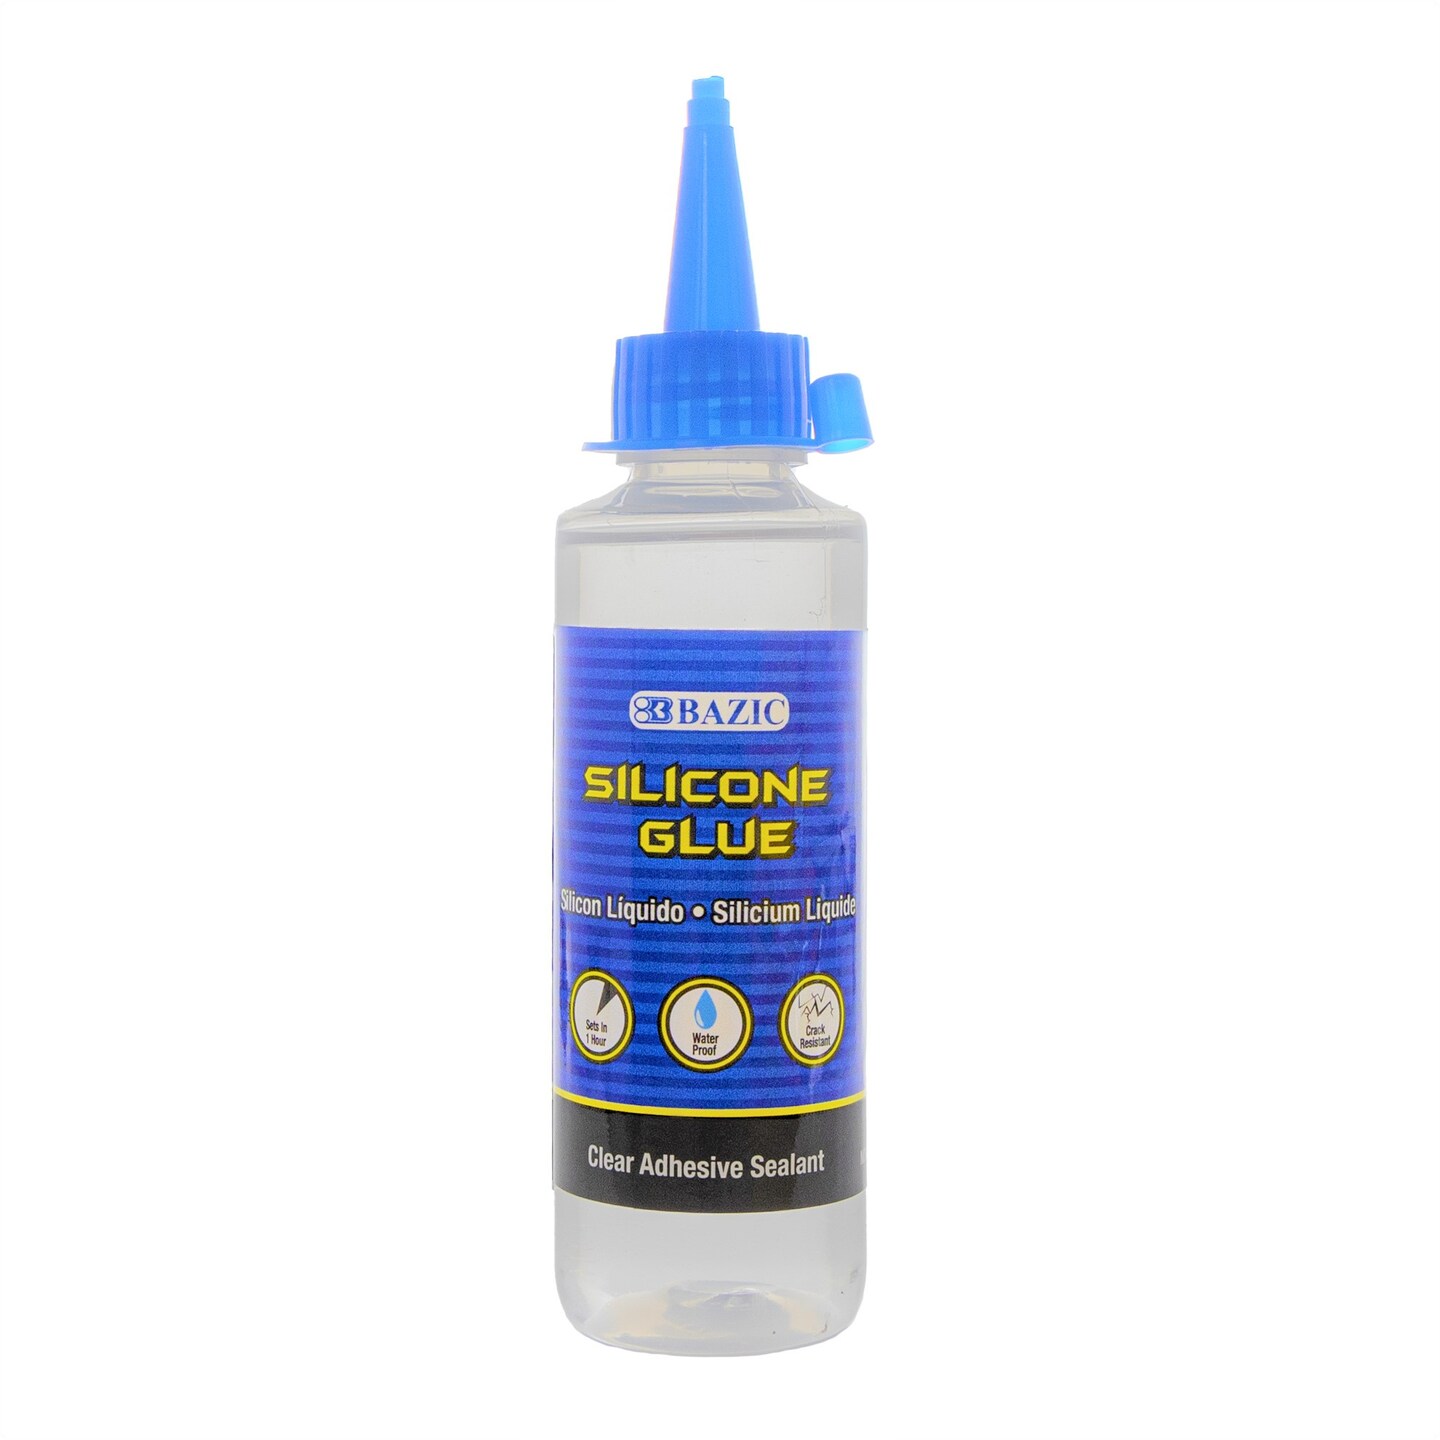 BAZIC Silicone Glue 3.38 FL OZ (100 mL)